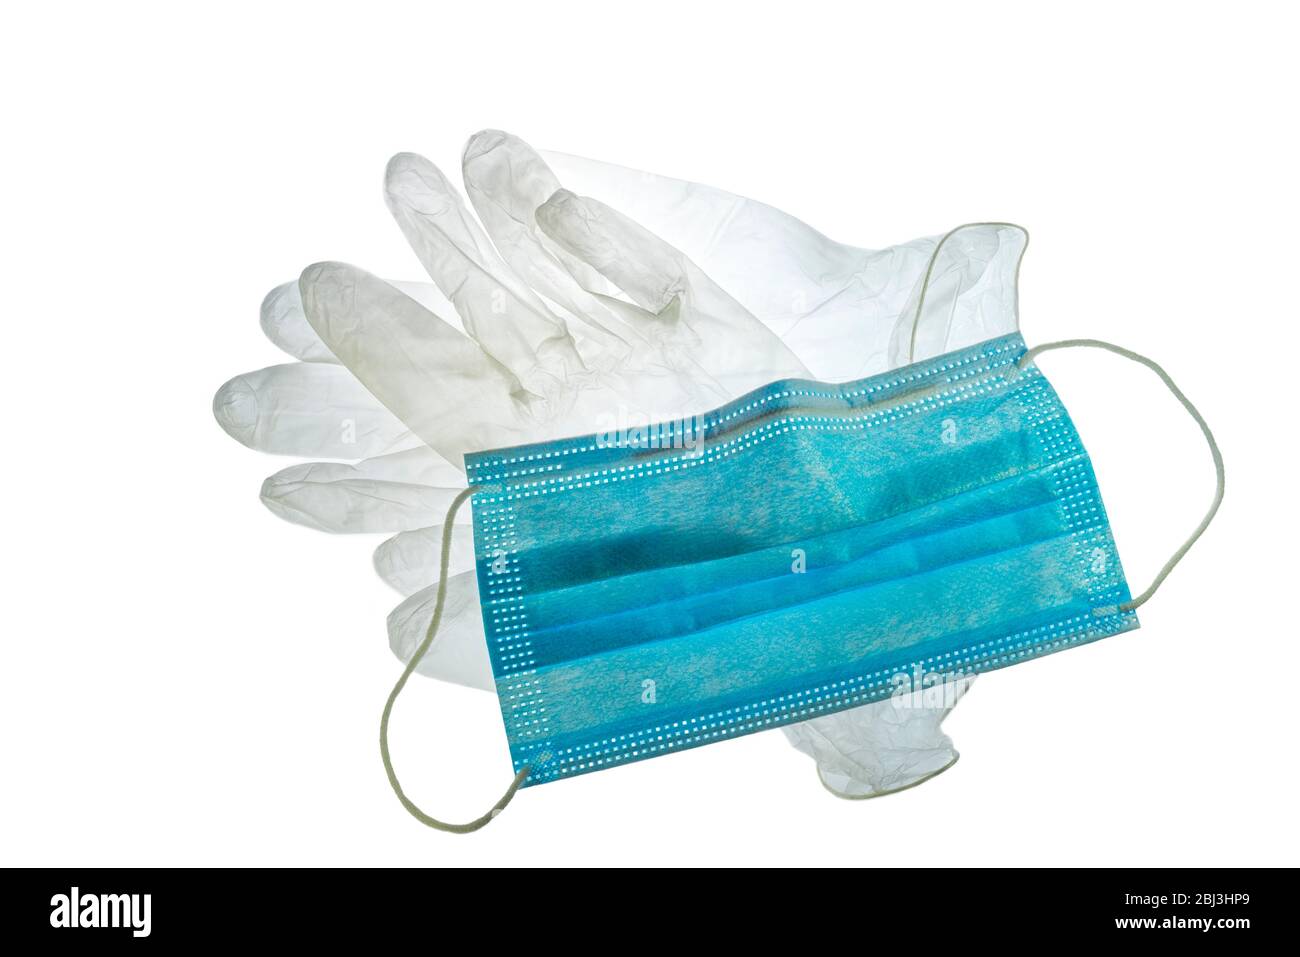 Gants en plastique transparent jetables et masque facial/masque pour éviter la propagation des germes pendant la pandémie du virus COVID-19 / coronavirus / corona Banque D'Images